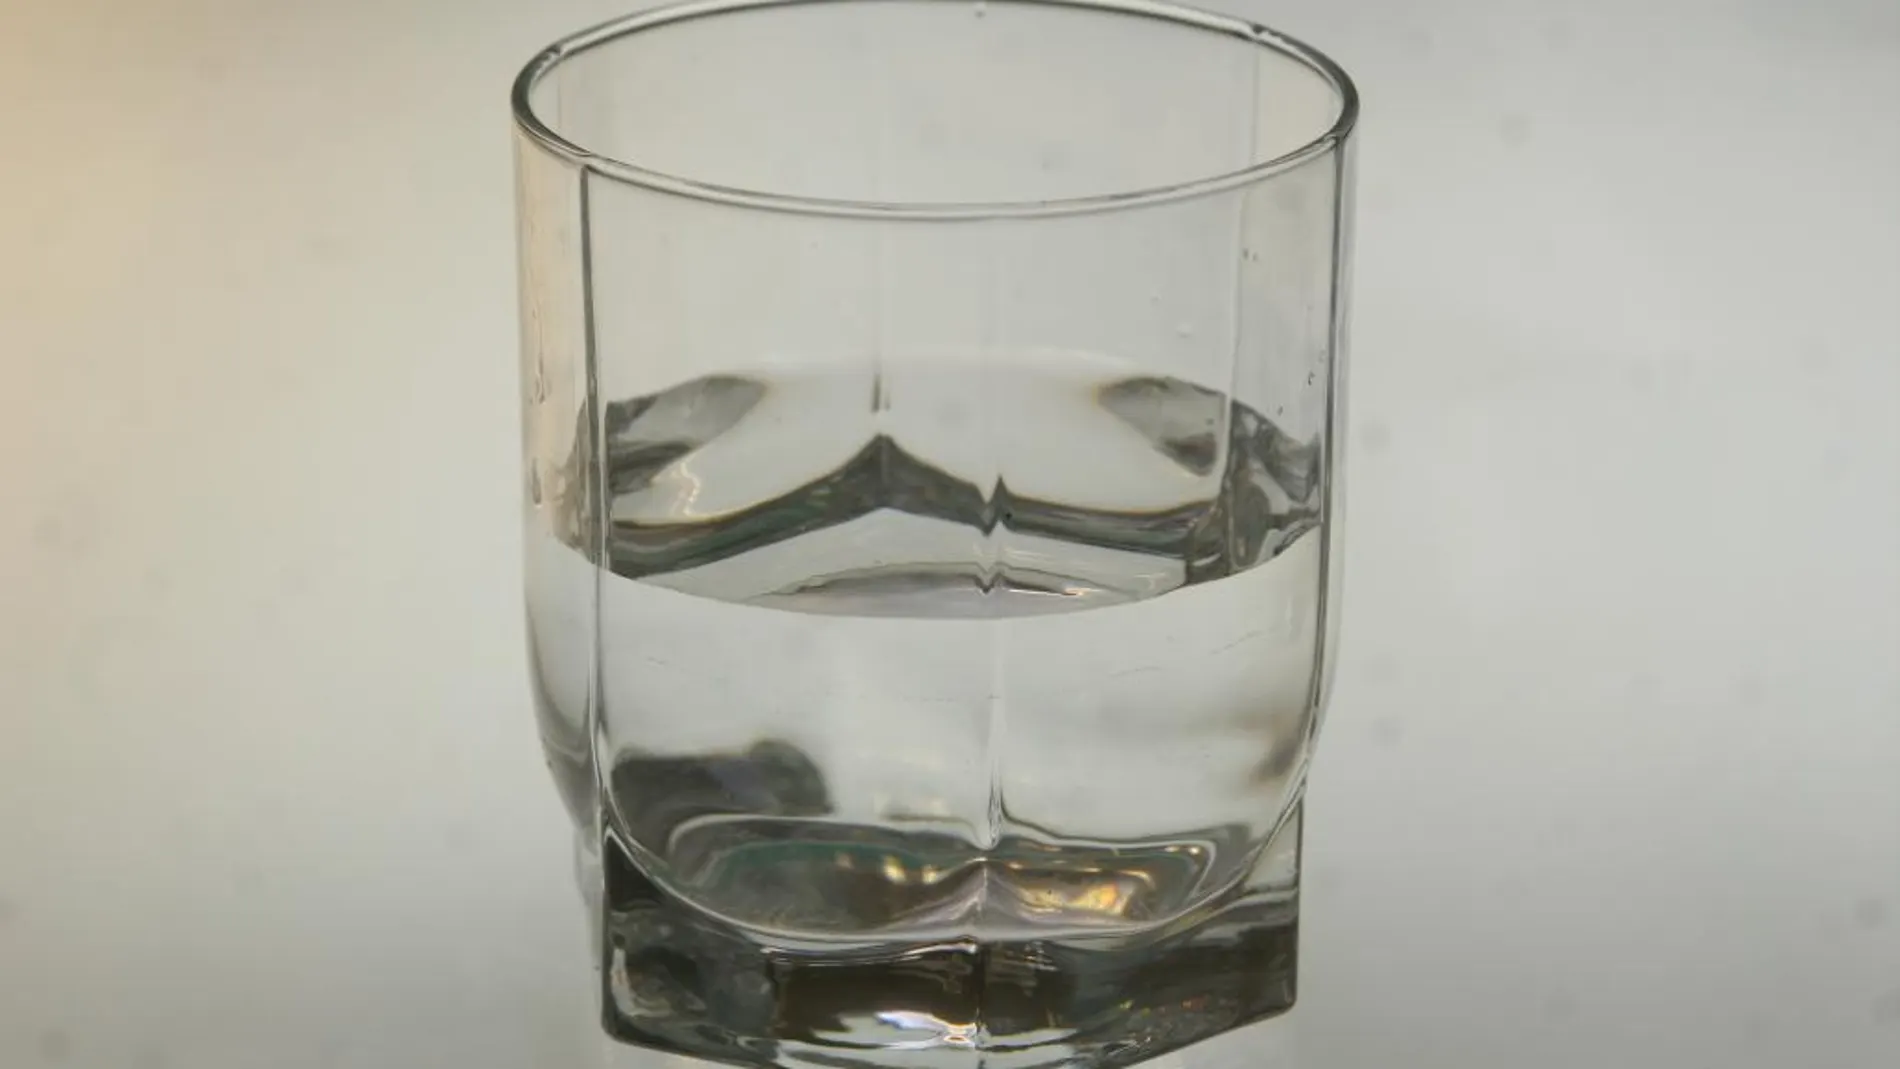 ¿El vaso medio lleno o medio vacío?